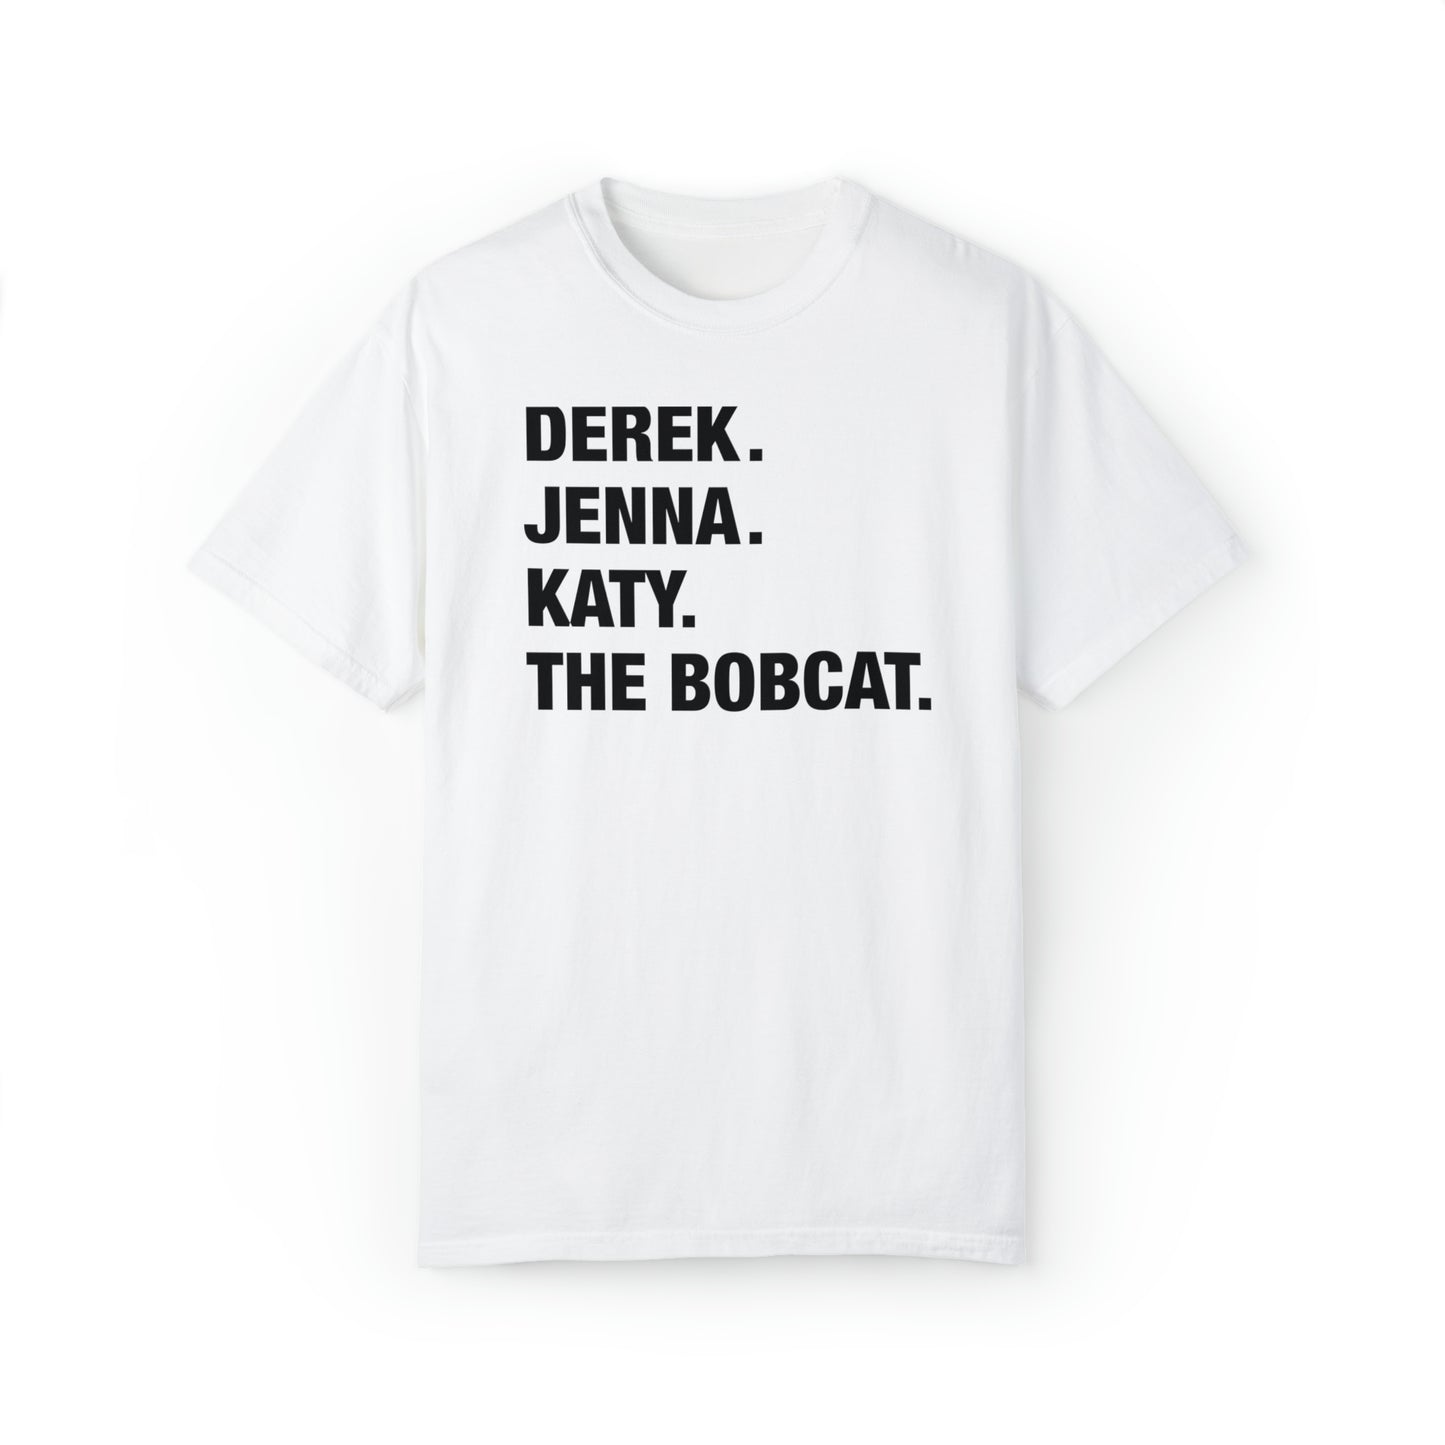 Derek. Jenna. Katy. The Bobcat. Unisex Tee - White/Black, Black/White